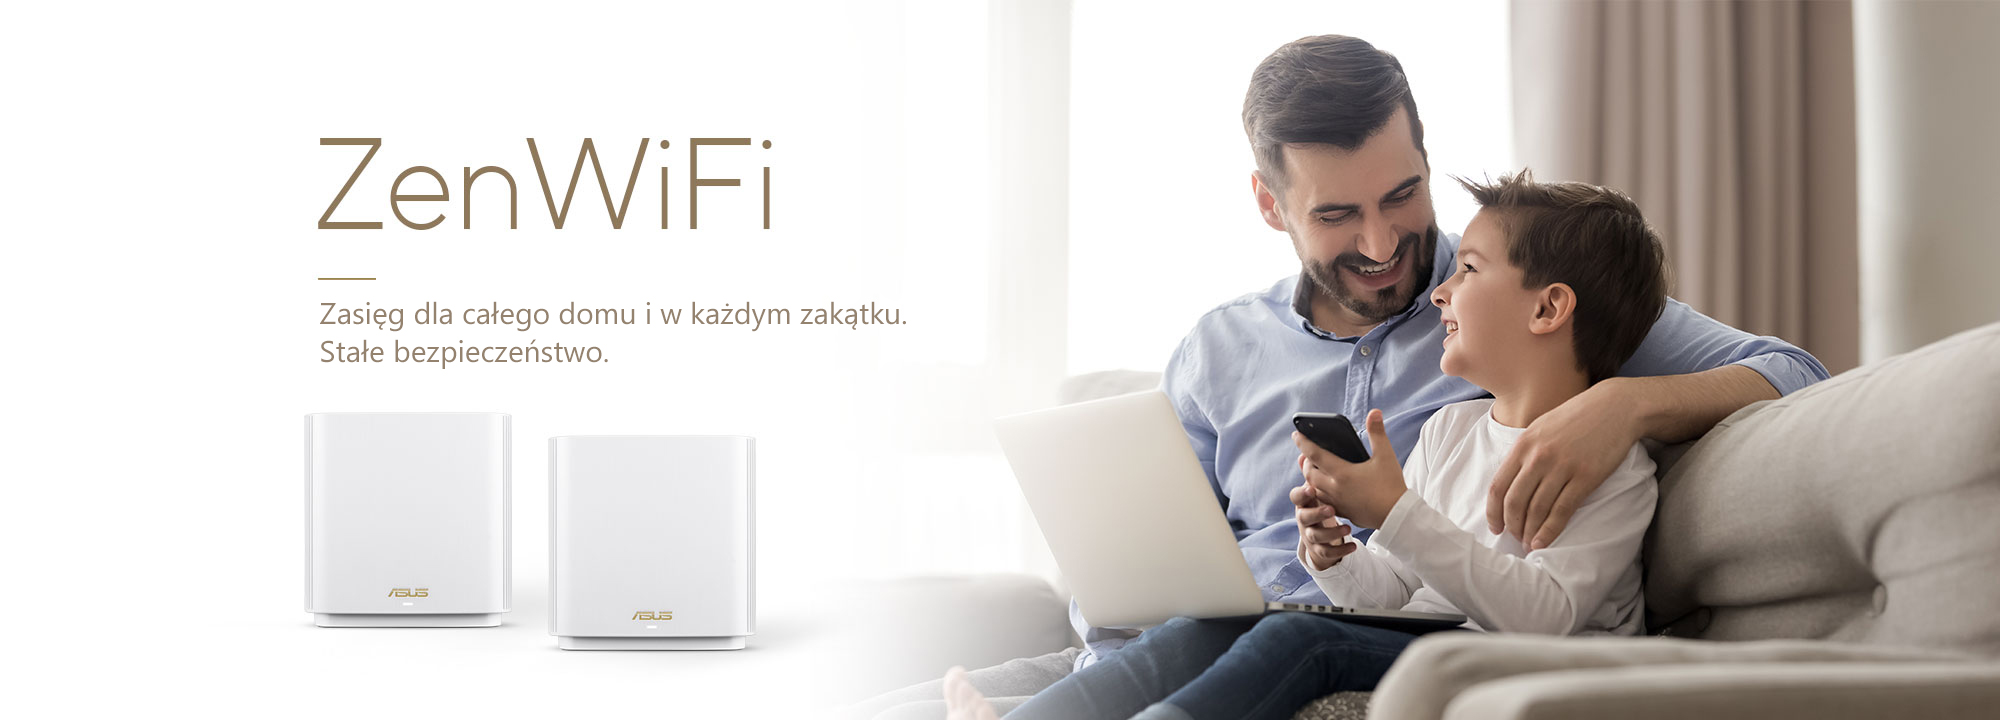 ASUS ZenWiFi to najlepszy system Wi-Fi dla całego domu, zapewniający stabilną i szybką łączność Wi-Fi dla wszystkich Twoich urządzeń.